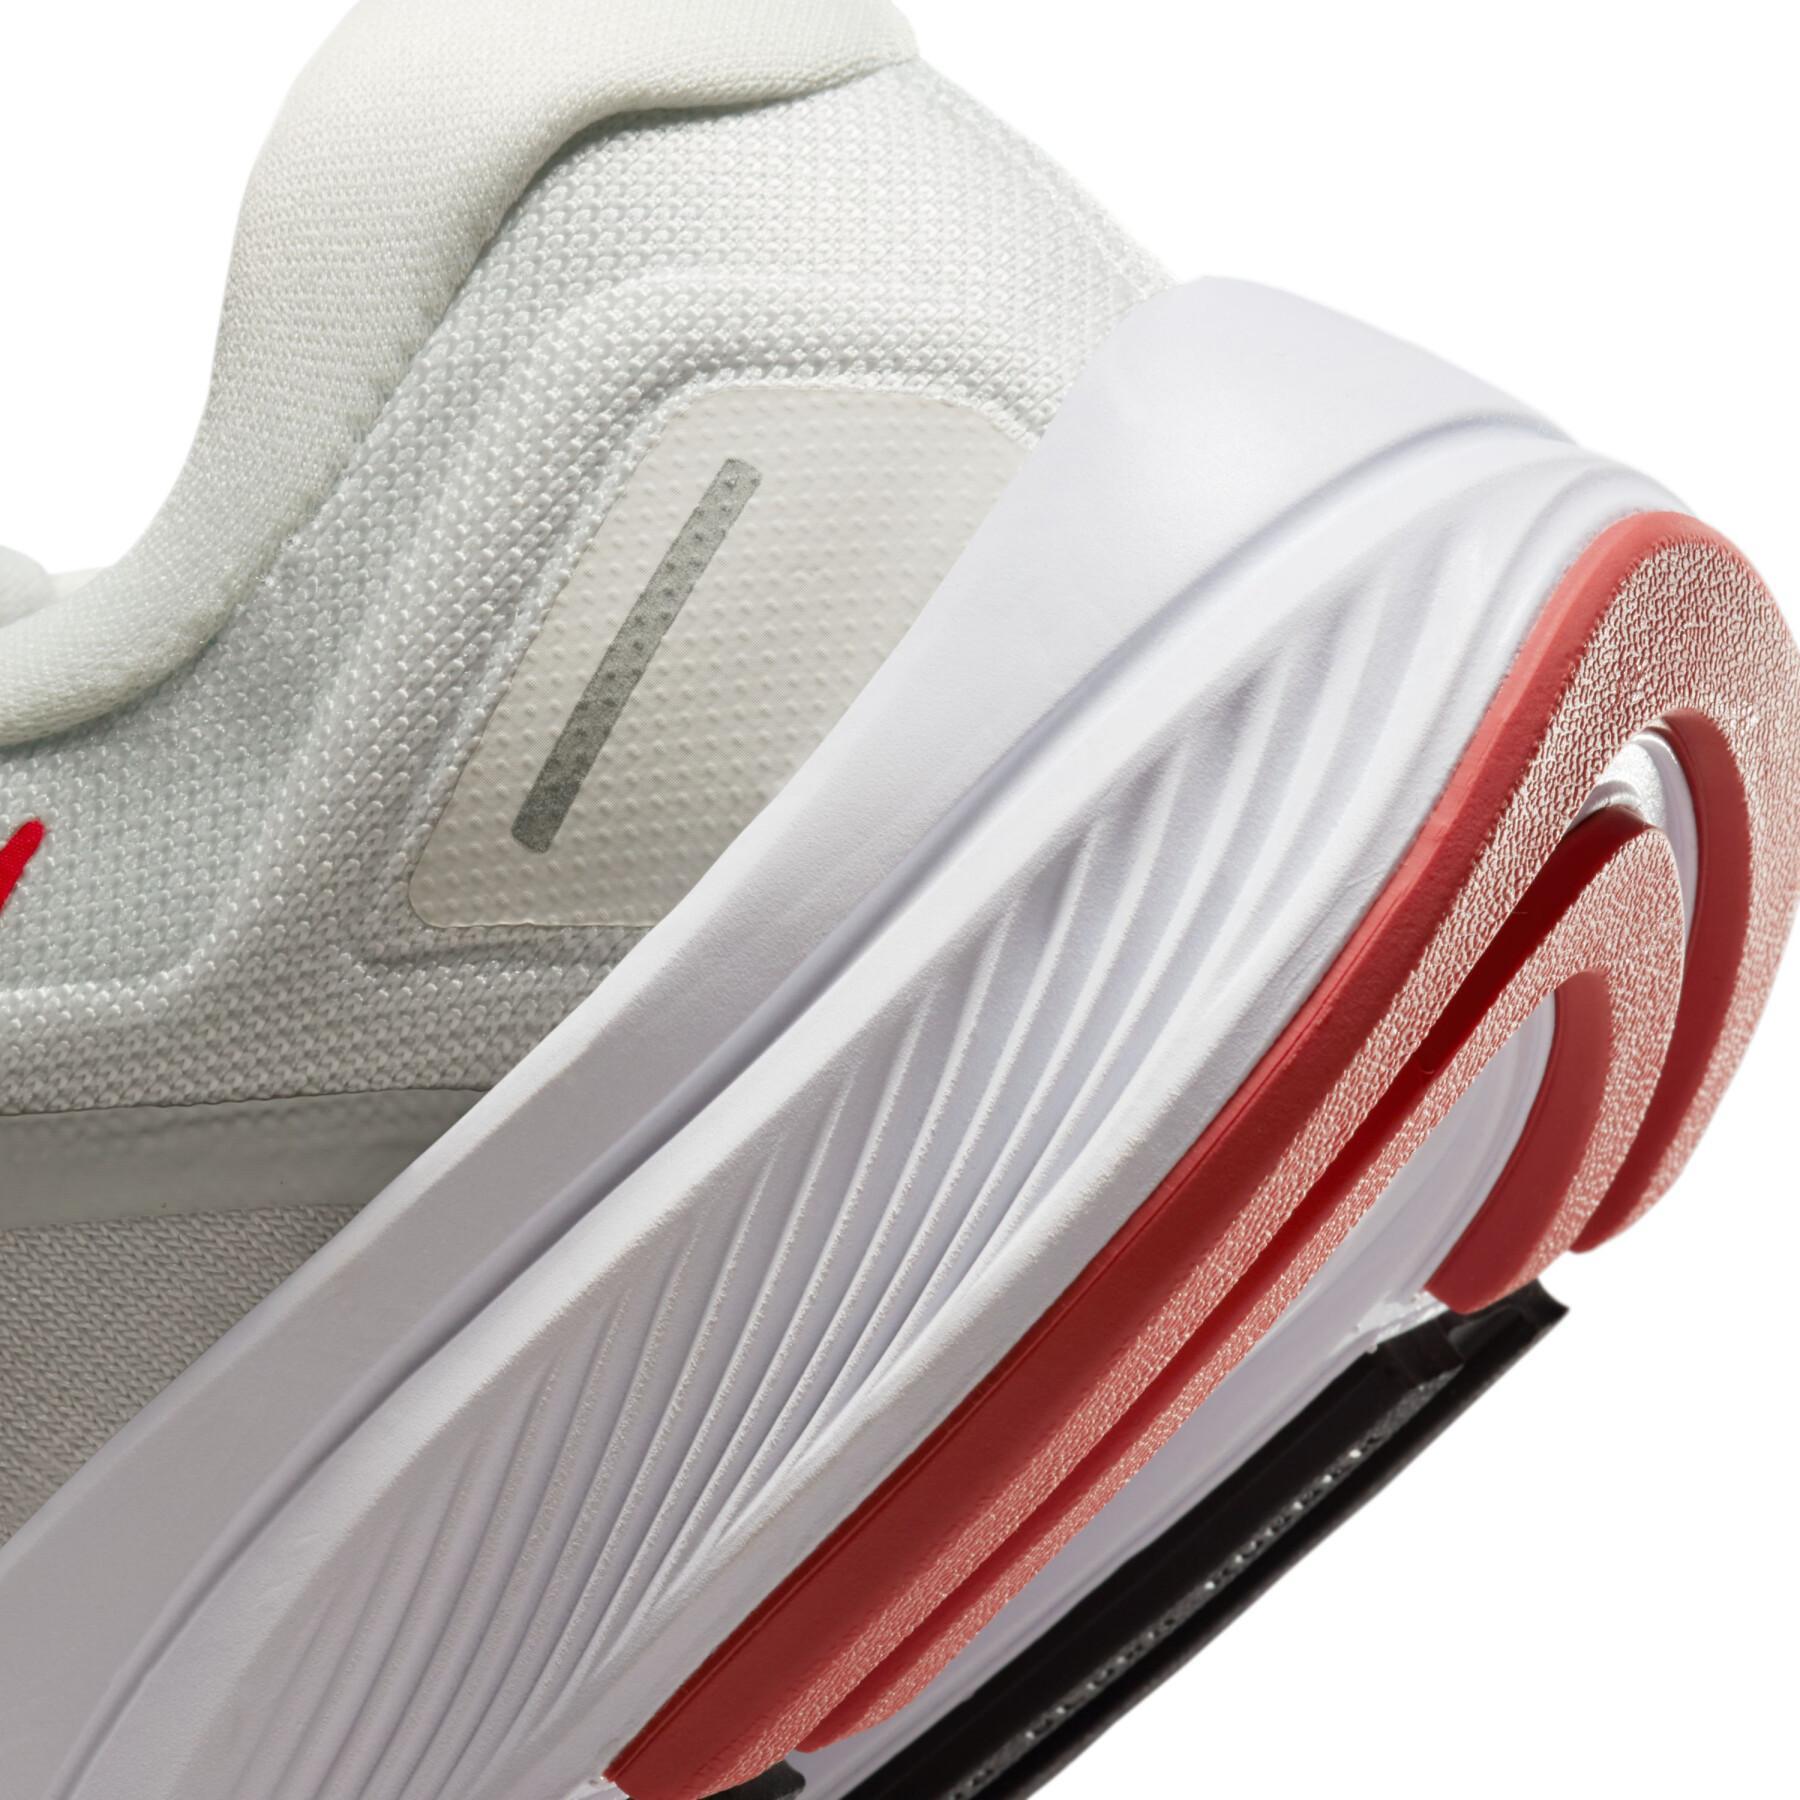 Schuhe von running Nike Structure 24